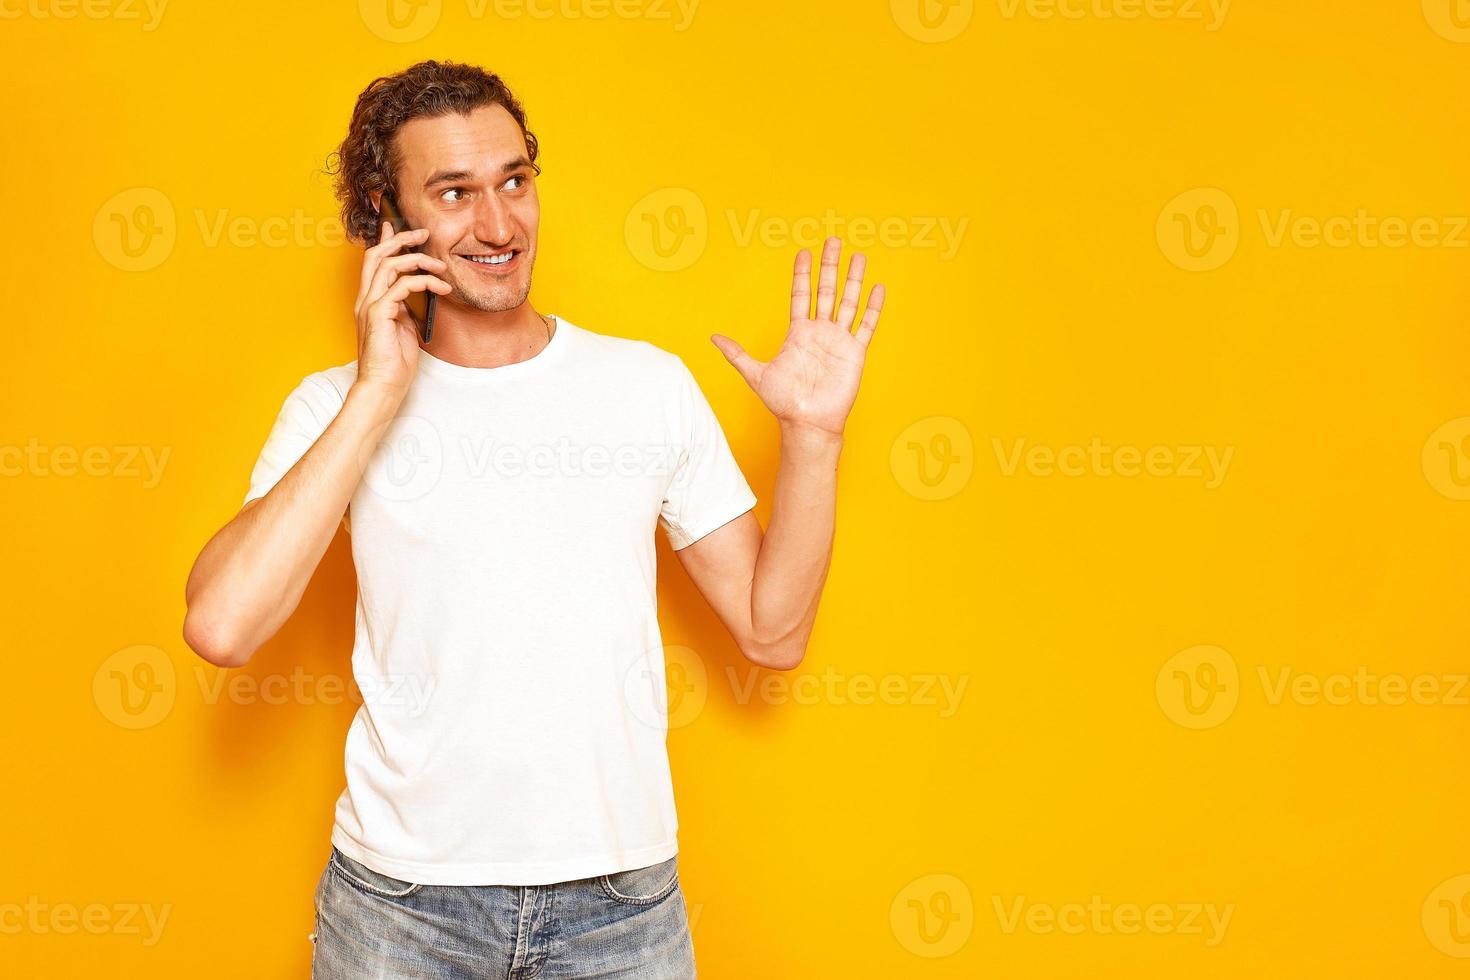 leende man pratar i telefon gestikulerar med sin upphöjda hand, njuter av kommunikation, klädd i vardagskläder. isolerad på studio gul bakgrund. koncept - människor, teknik, kommunikation foto